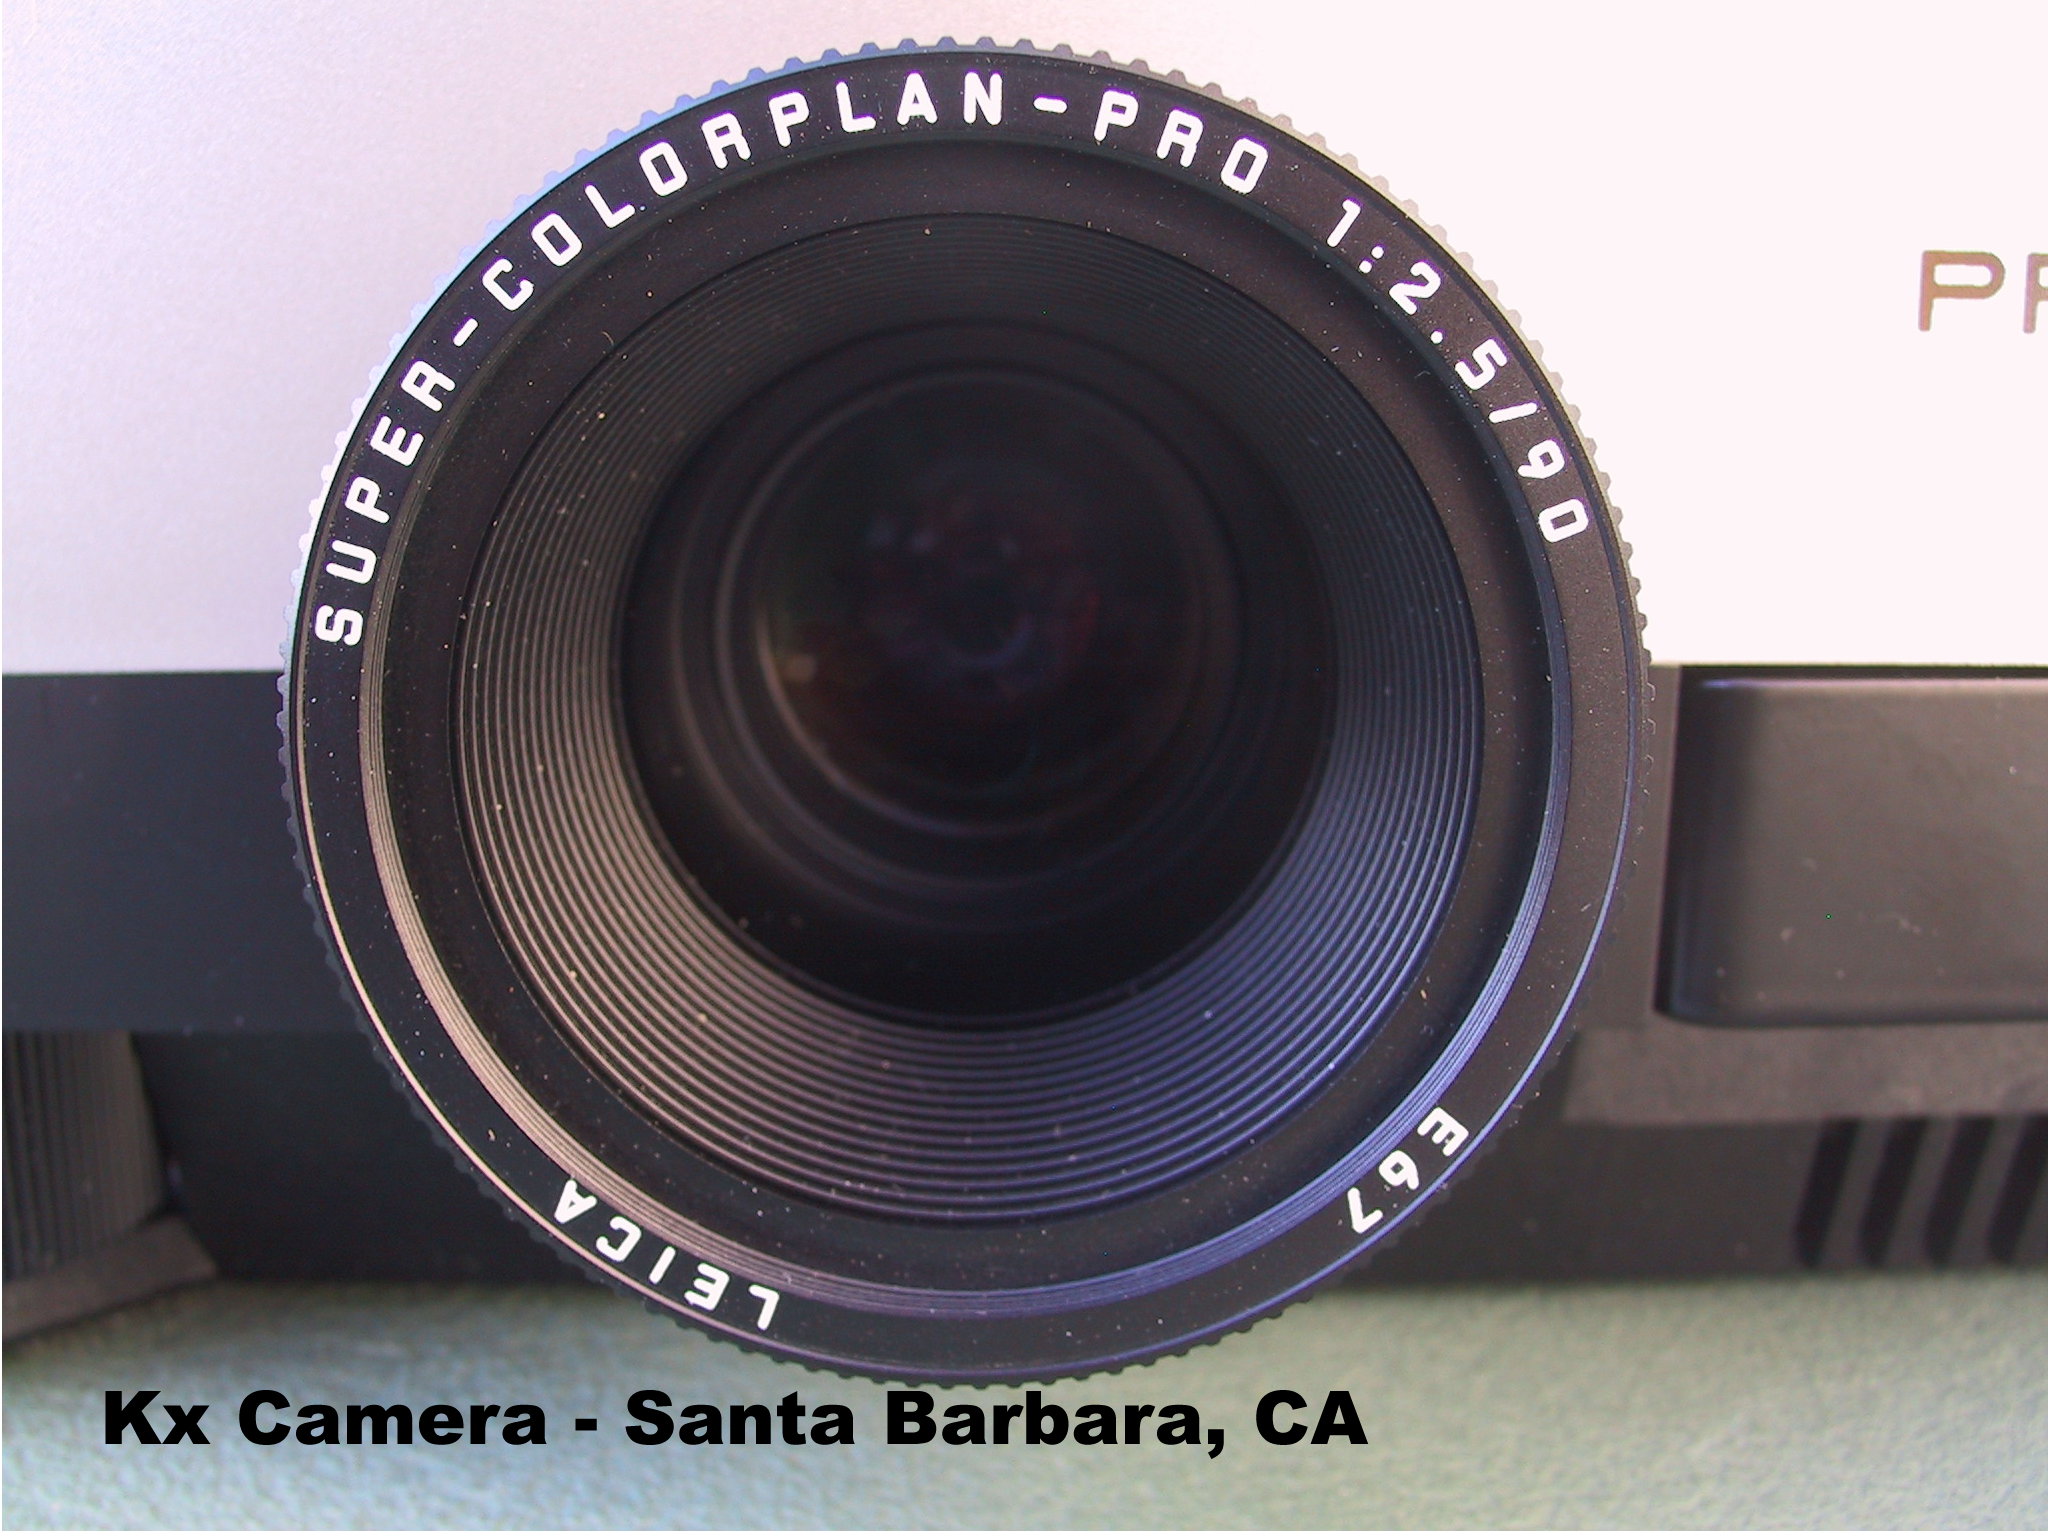 Leica 90mm / 2.5 Super Colorplan Pro Lens - KX Camera Kodak Slide Projectors Since 1980 - 1732-1/2 Grand Ave. Santa Barbara, CA 93103 805-963-5625